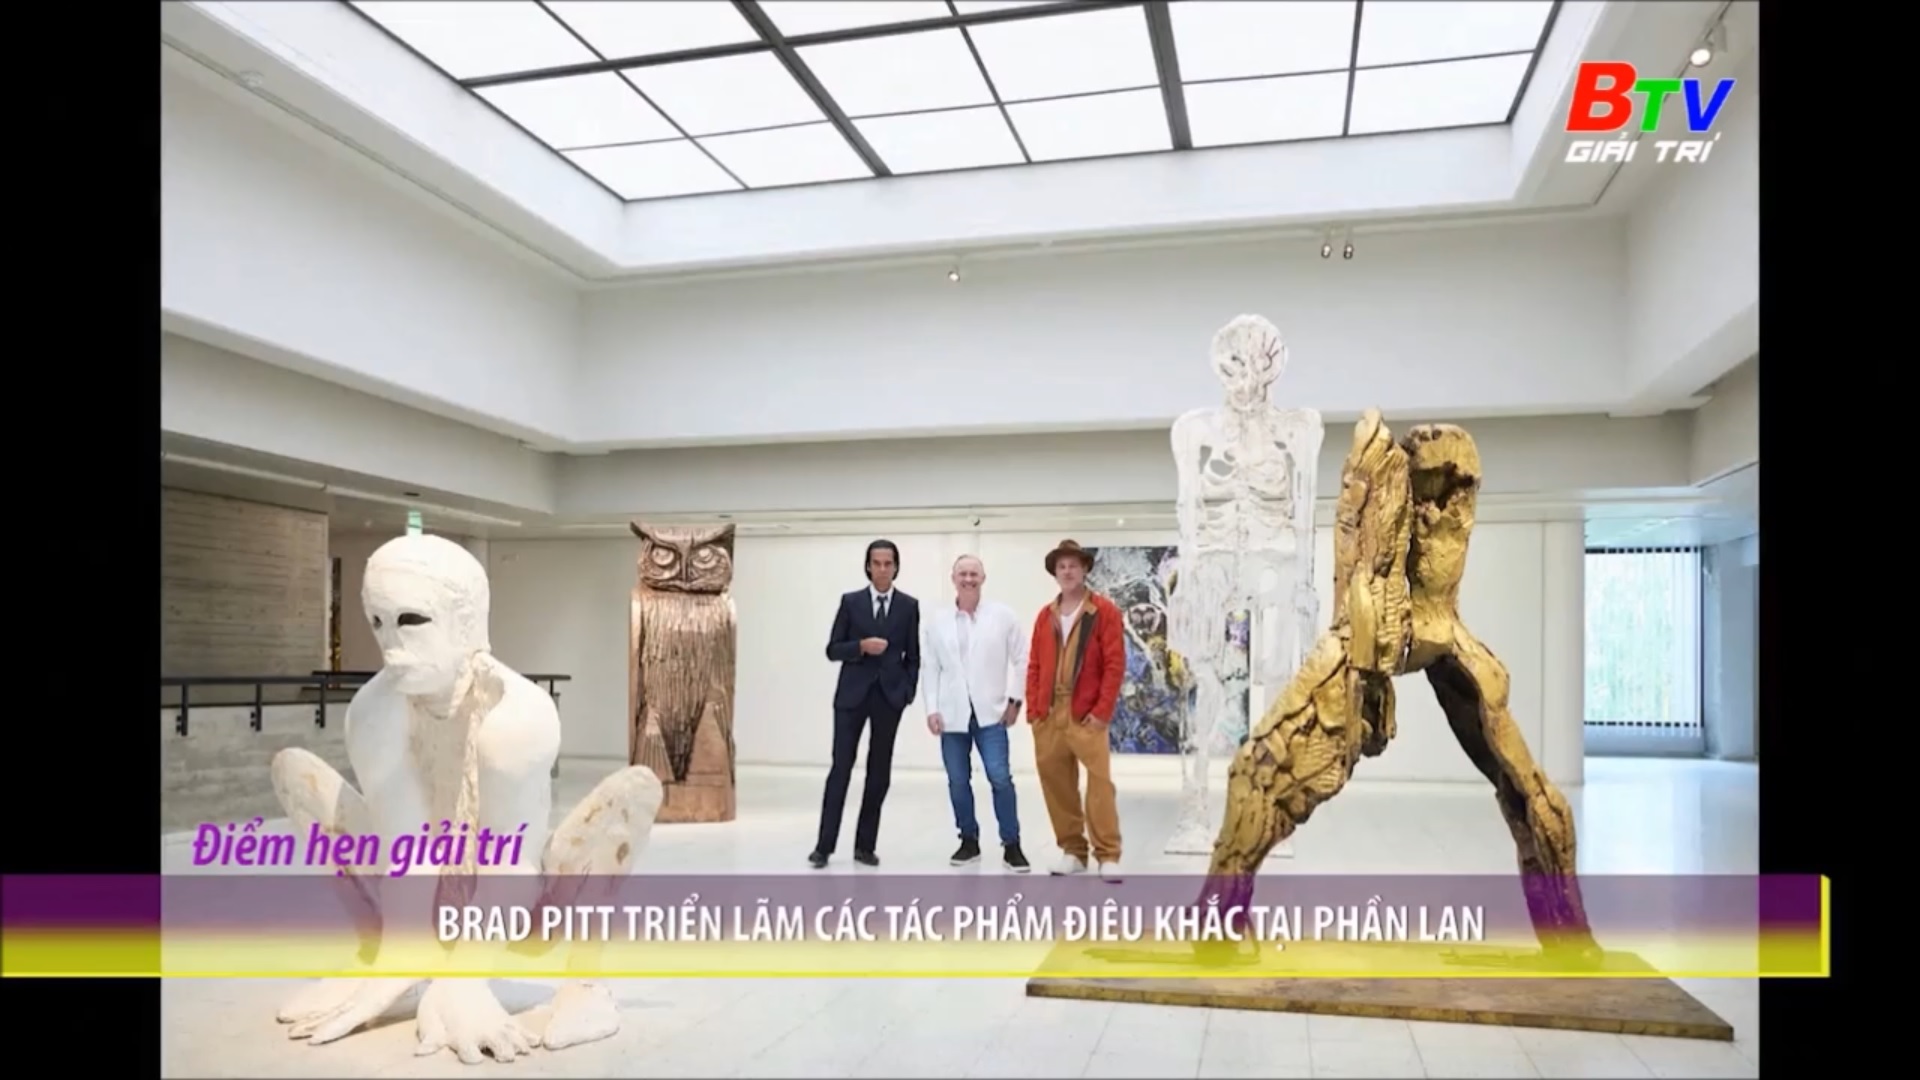 Brad Pitt triển lãm các tác phẩm điêu khắc tại Phần Lan